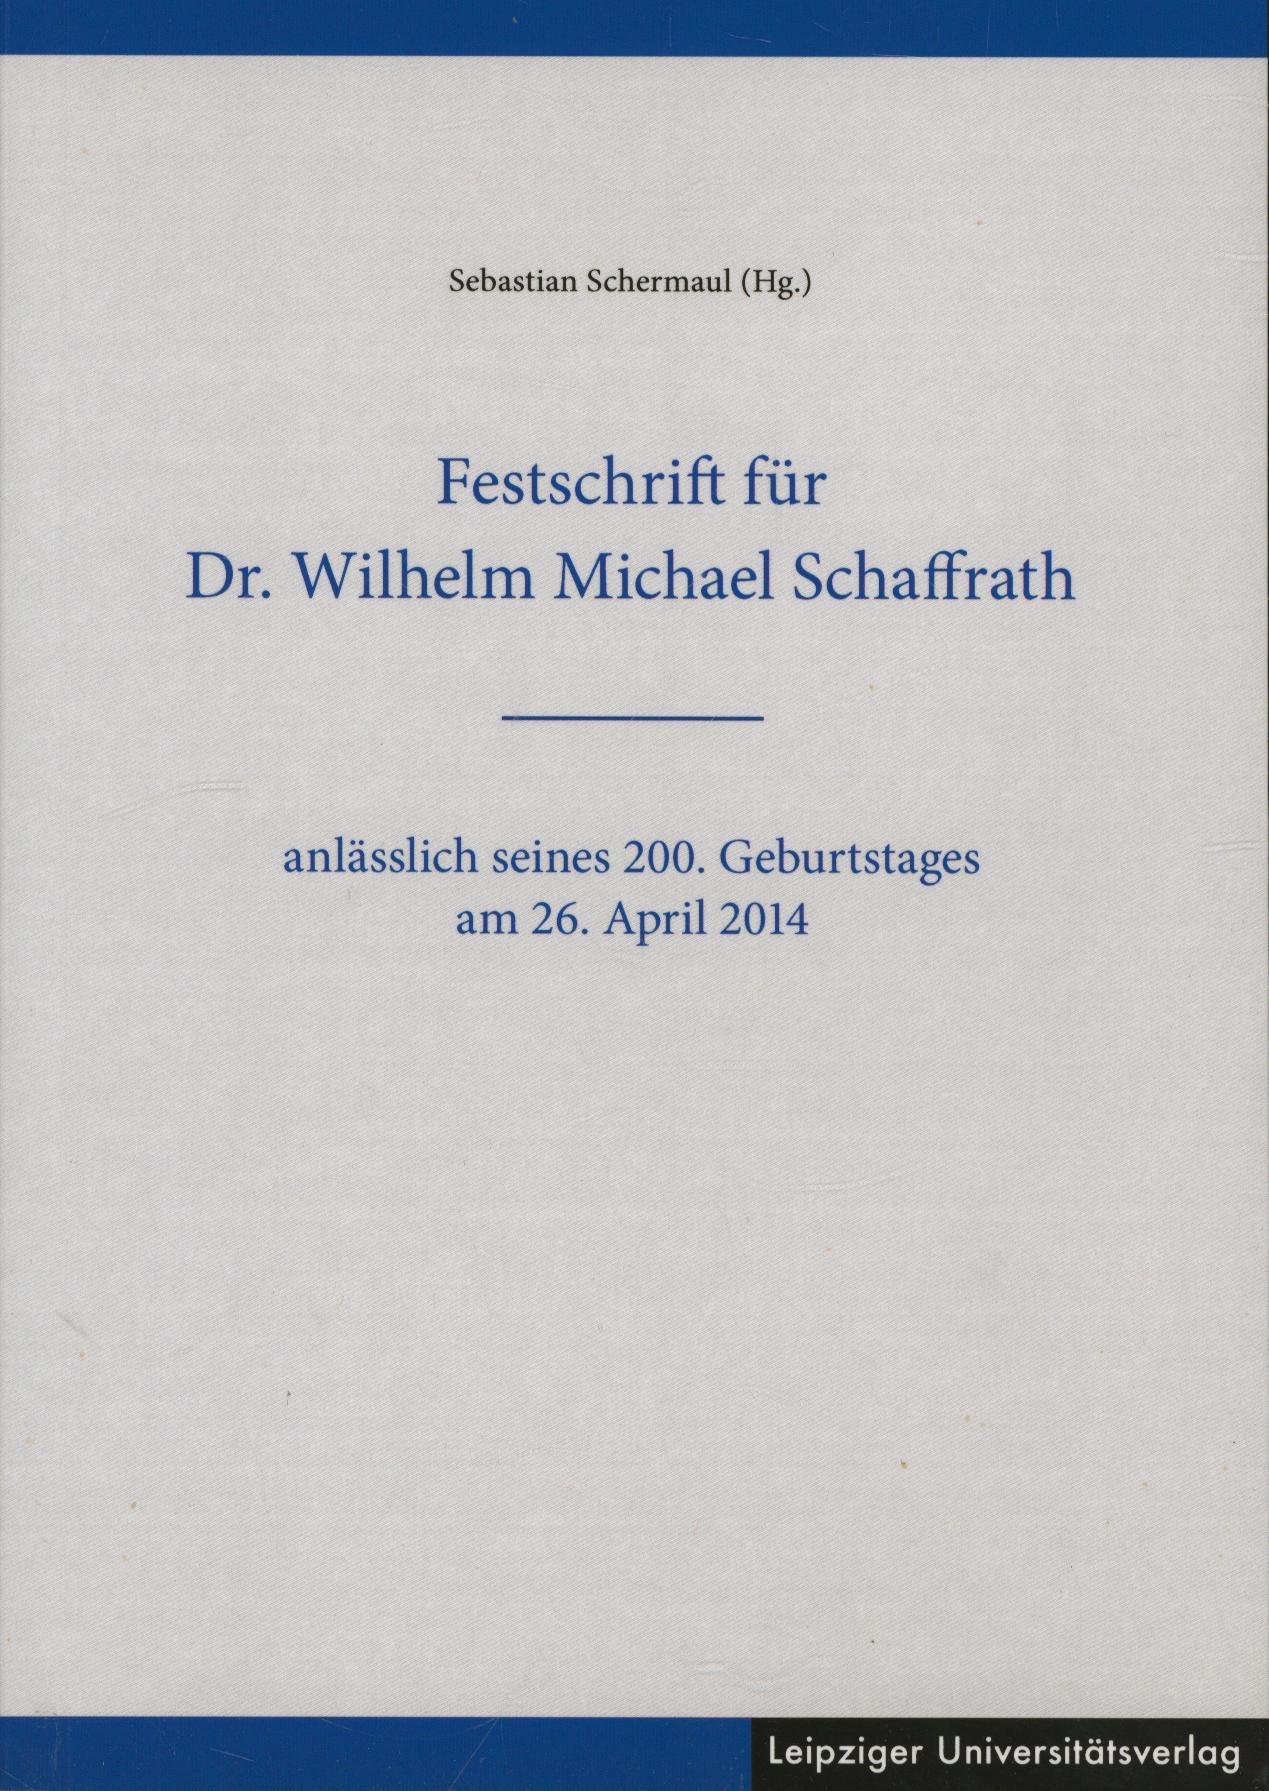 Festschrift für Dr. Wilhelm Michael Schaffrath: anlässlich seines 200. Geburtstages am 26. April 2014 - Schermaul, Sebastian